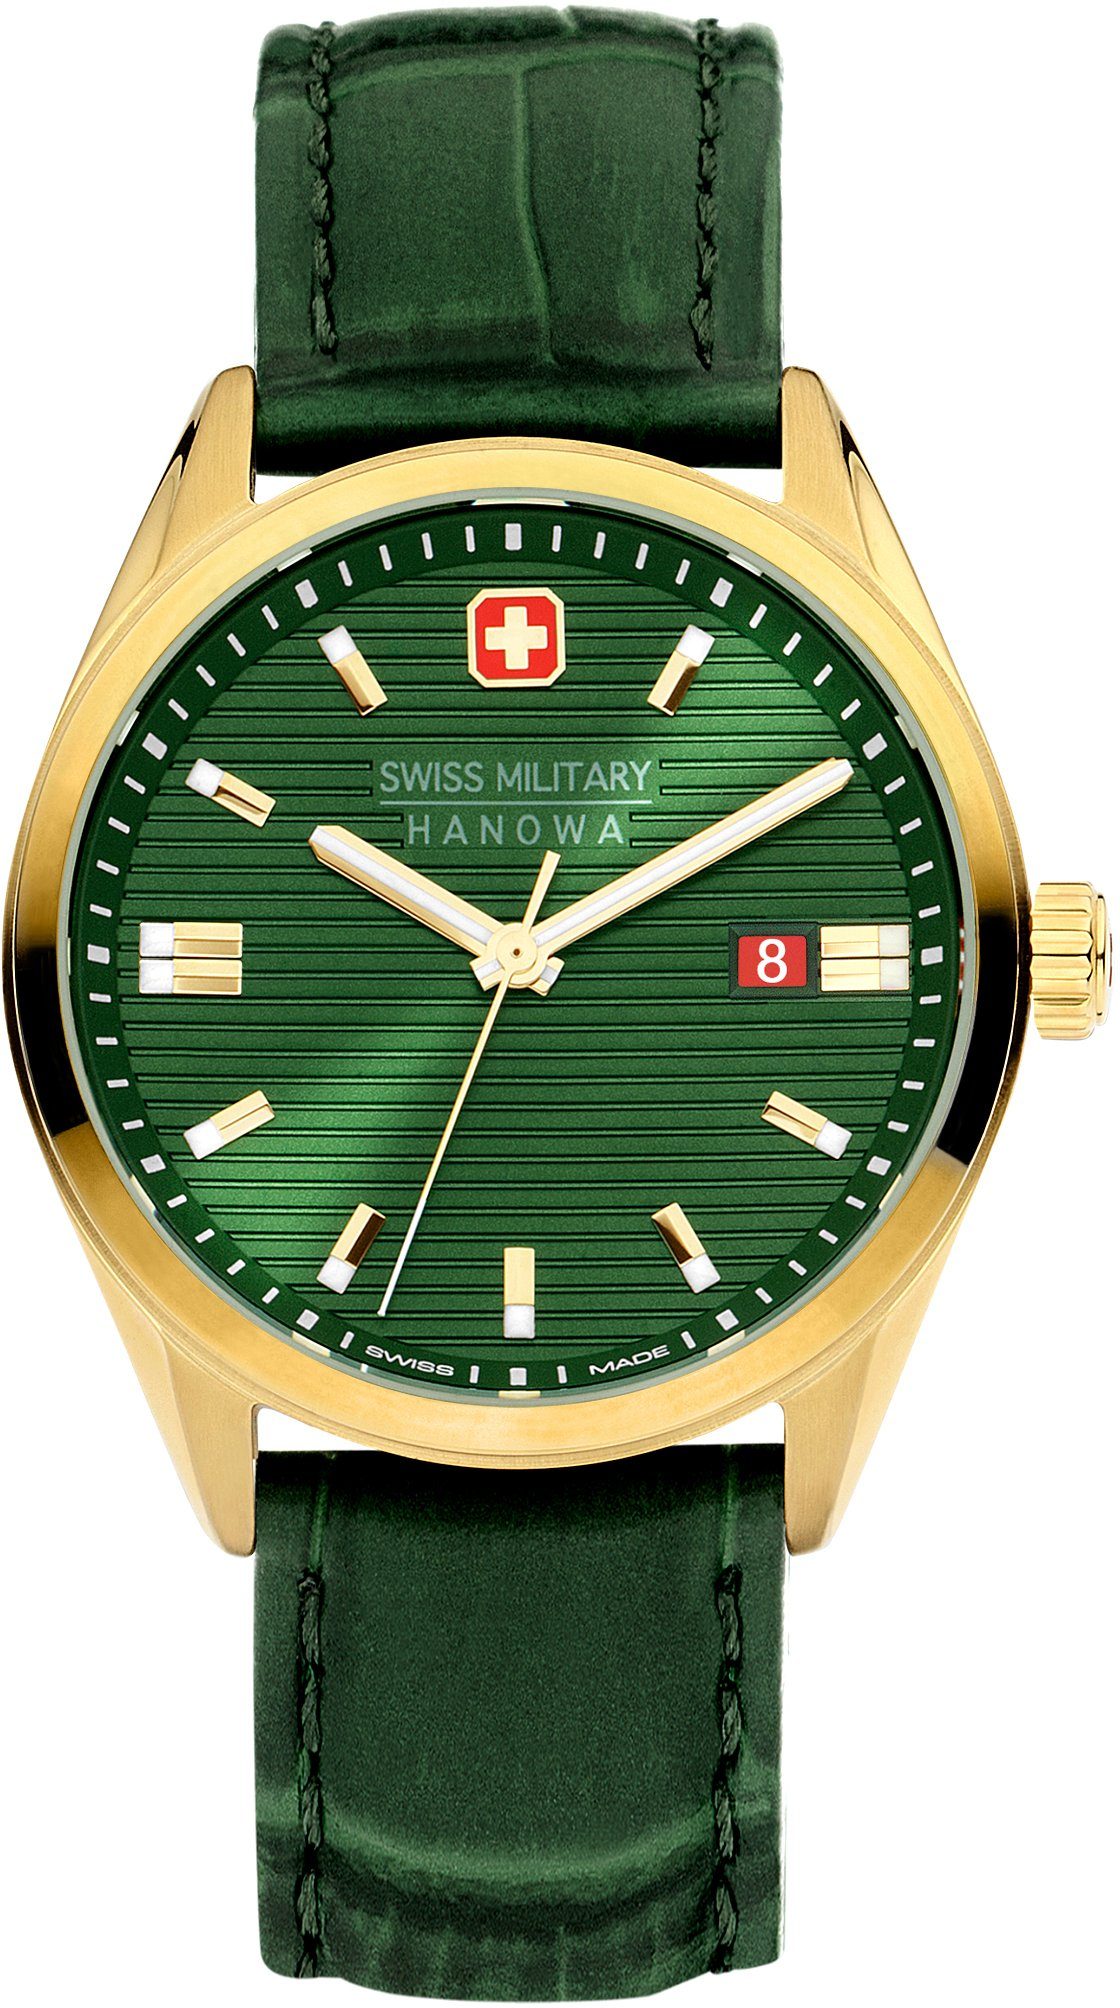 SMWGB2200111 ROADRUNNER, Swiss Grün Uhr Hanowa Military Schweizer